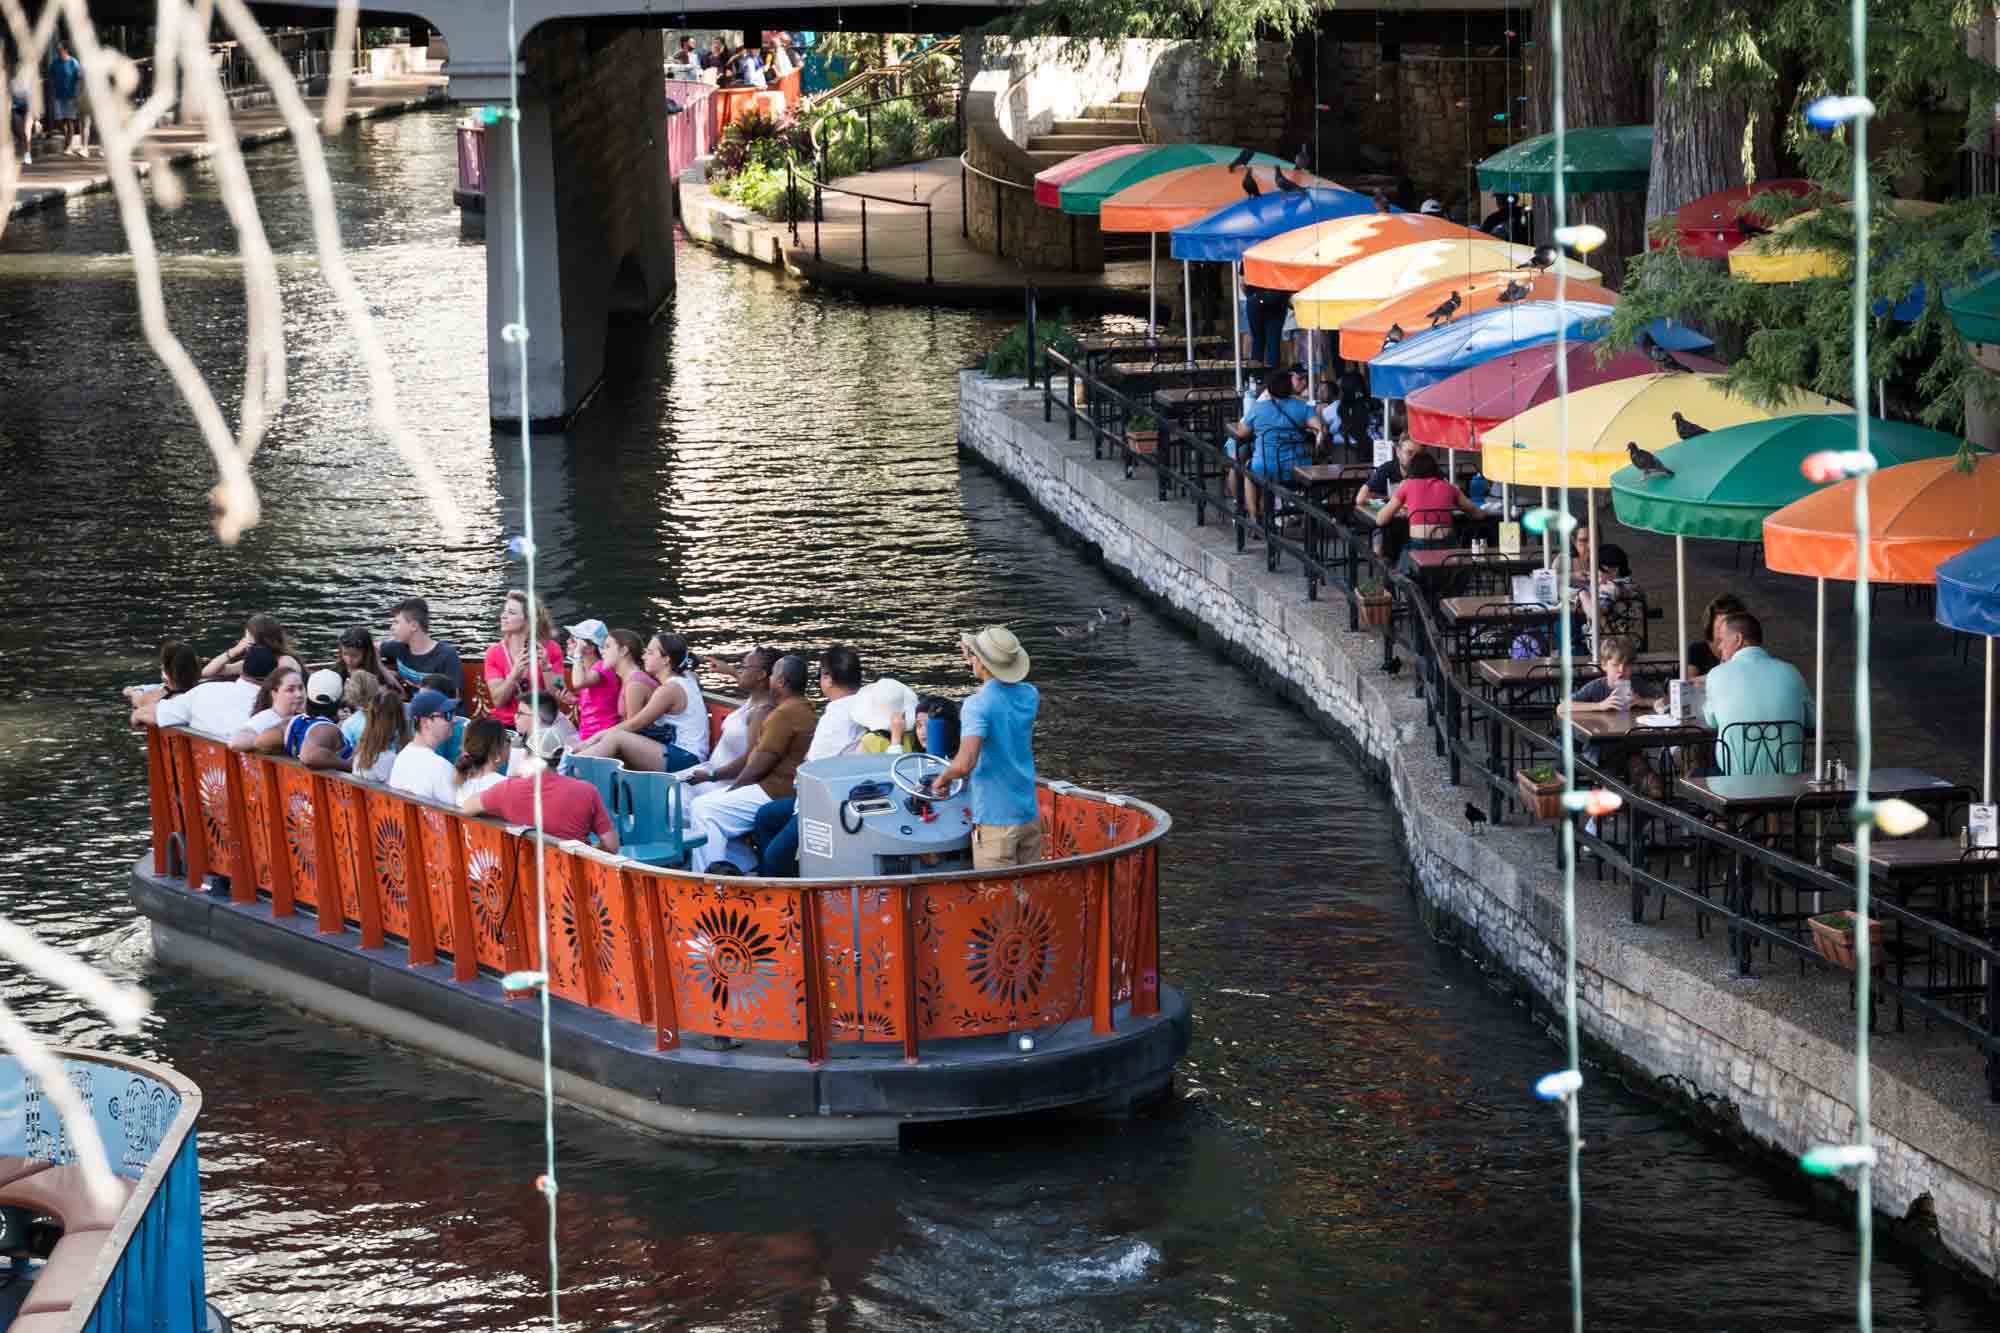 Orange boat on Riverwalk sailing past colorful umbrellas in San Antonio